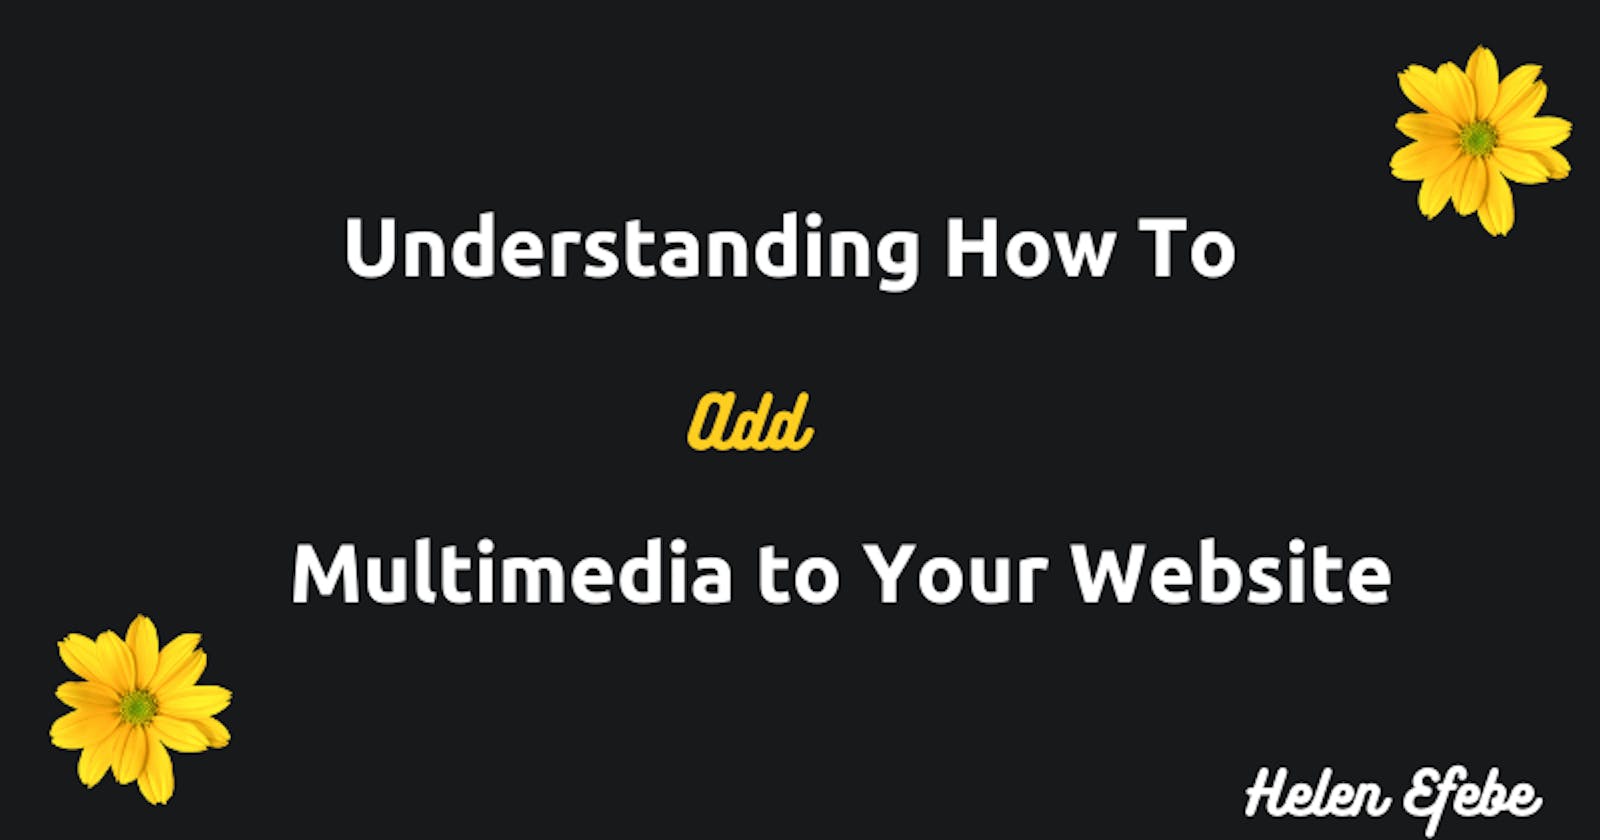 Understanding How To Add Multimedia to Your Website